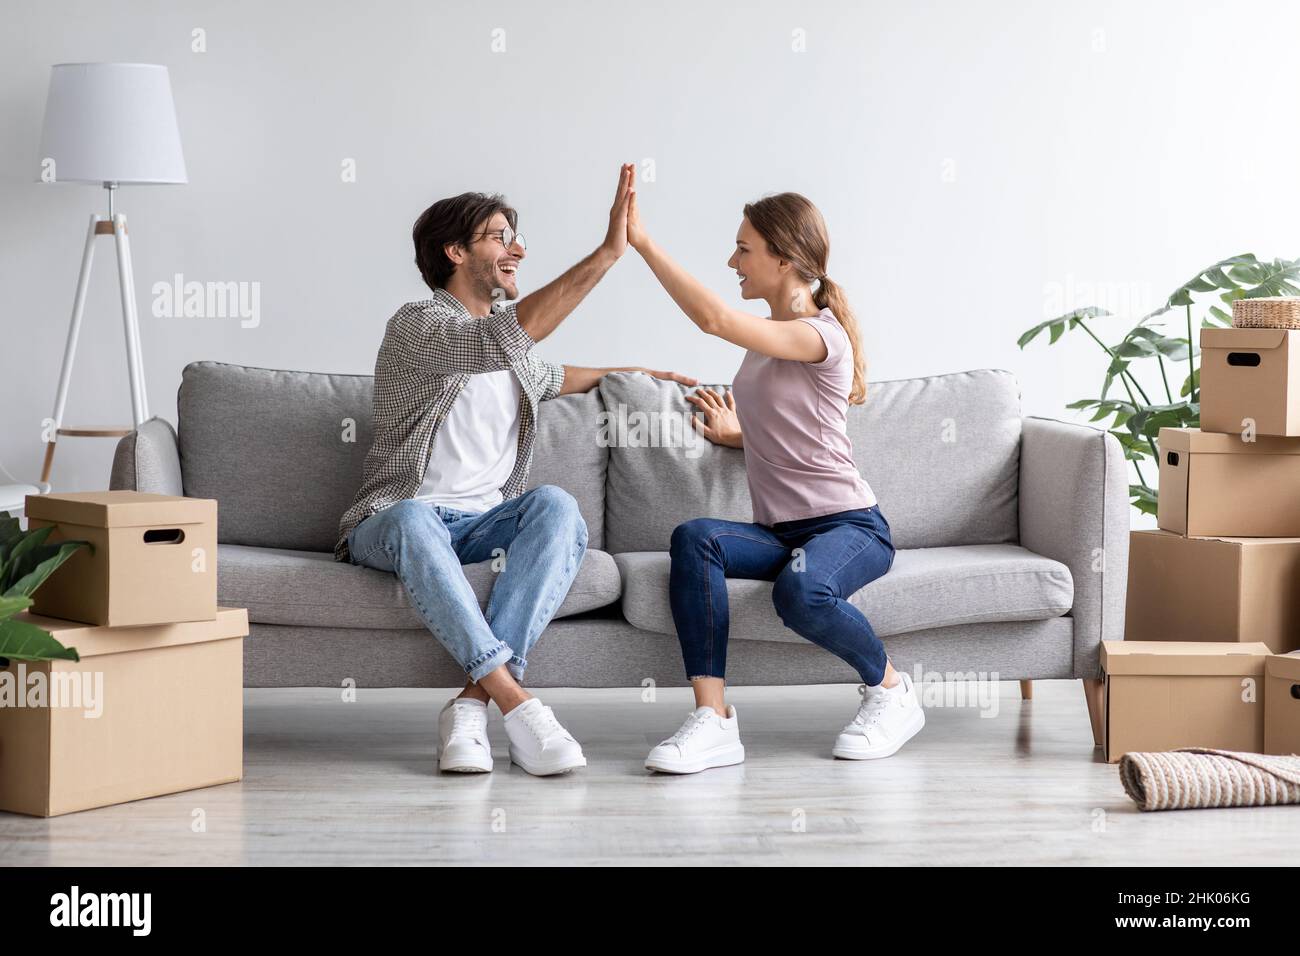 Zufriedene europäische junge Mann und Frau geben hohe fünf auf Sofa im Wohnzimmer mit Boxen Stockfoto